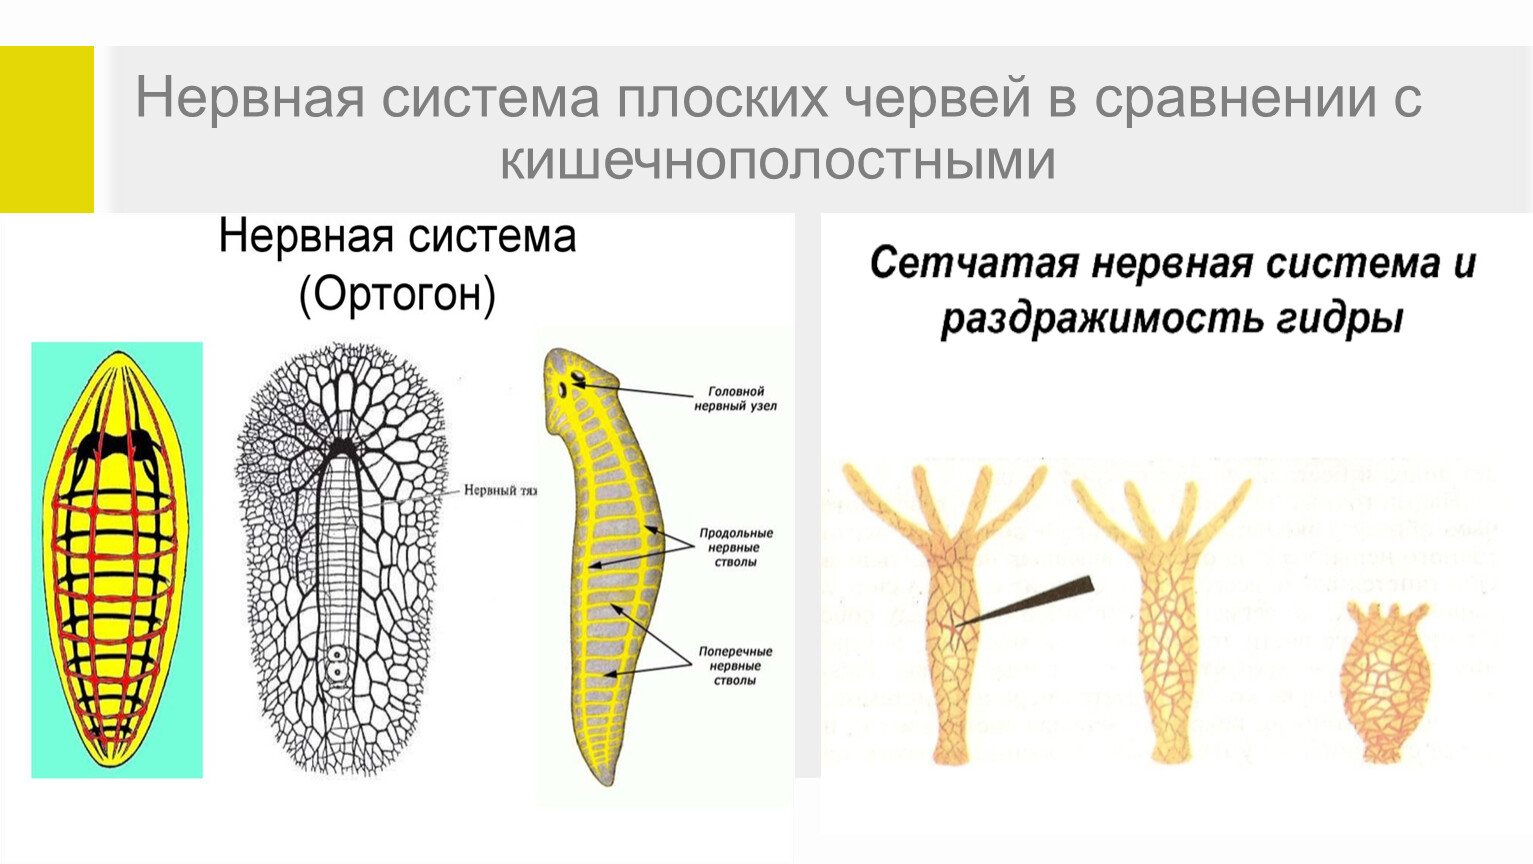 Лучевая симметрия червя. Нервная система лестничного типа. Нервная система лестничного типа у каких червей. Нервная система плоских червей какого типа. Система лестничного типа у каких червей.